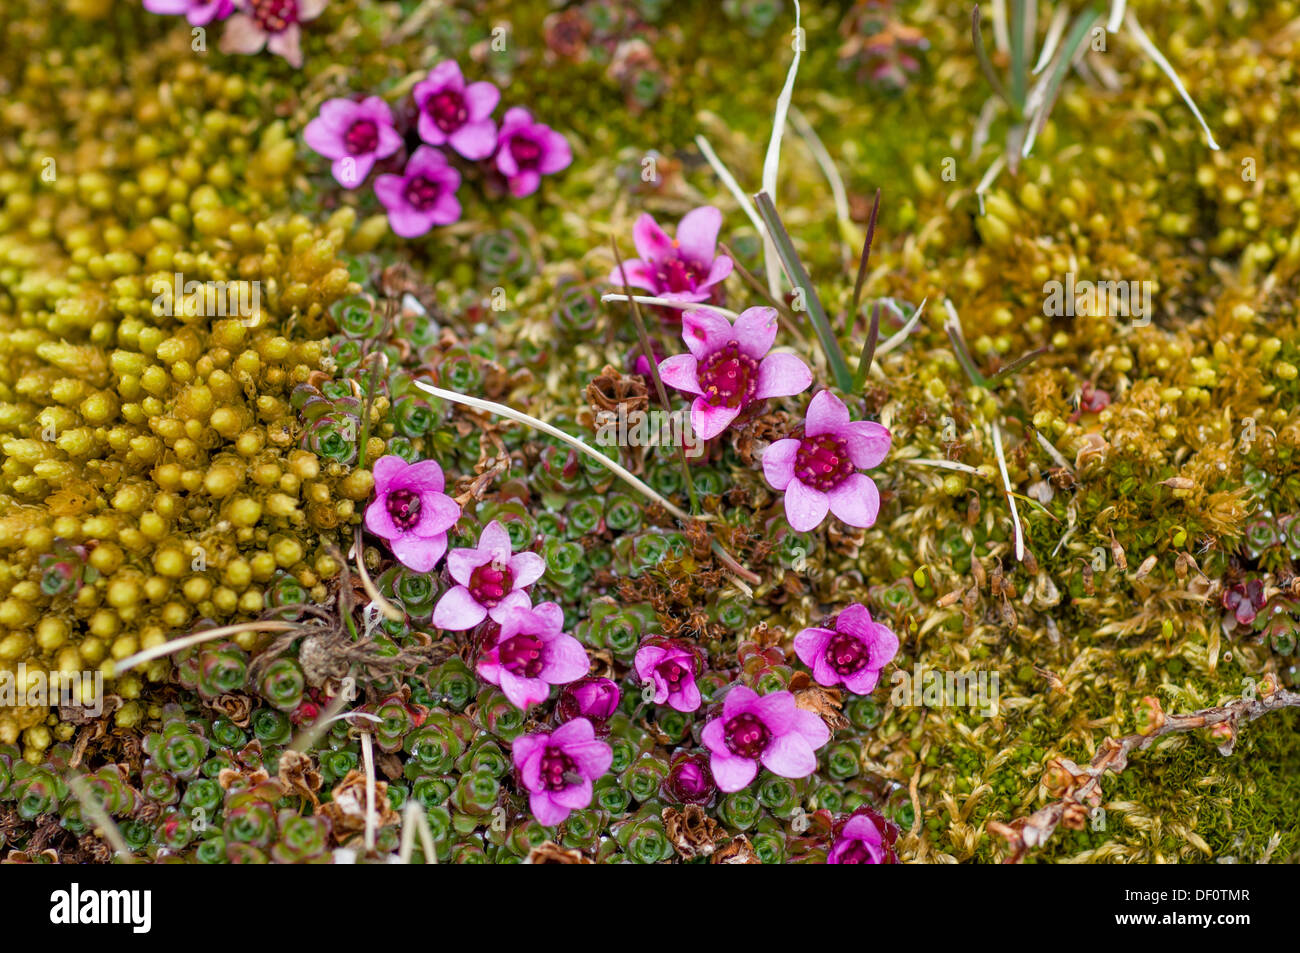 Purple saxifrage (Saxifraga oppositifolia) flowering, near Gnalodden, Hornsund, Spitsbergen, Svalbard Archipelago, Norway Stock Photo